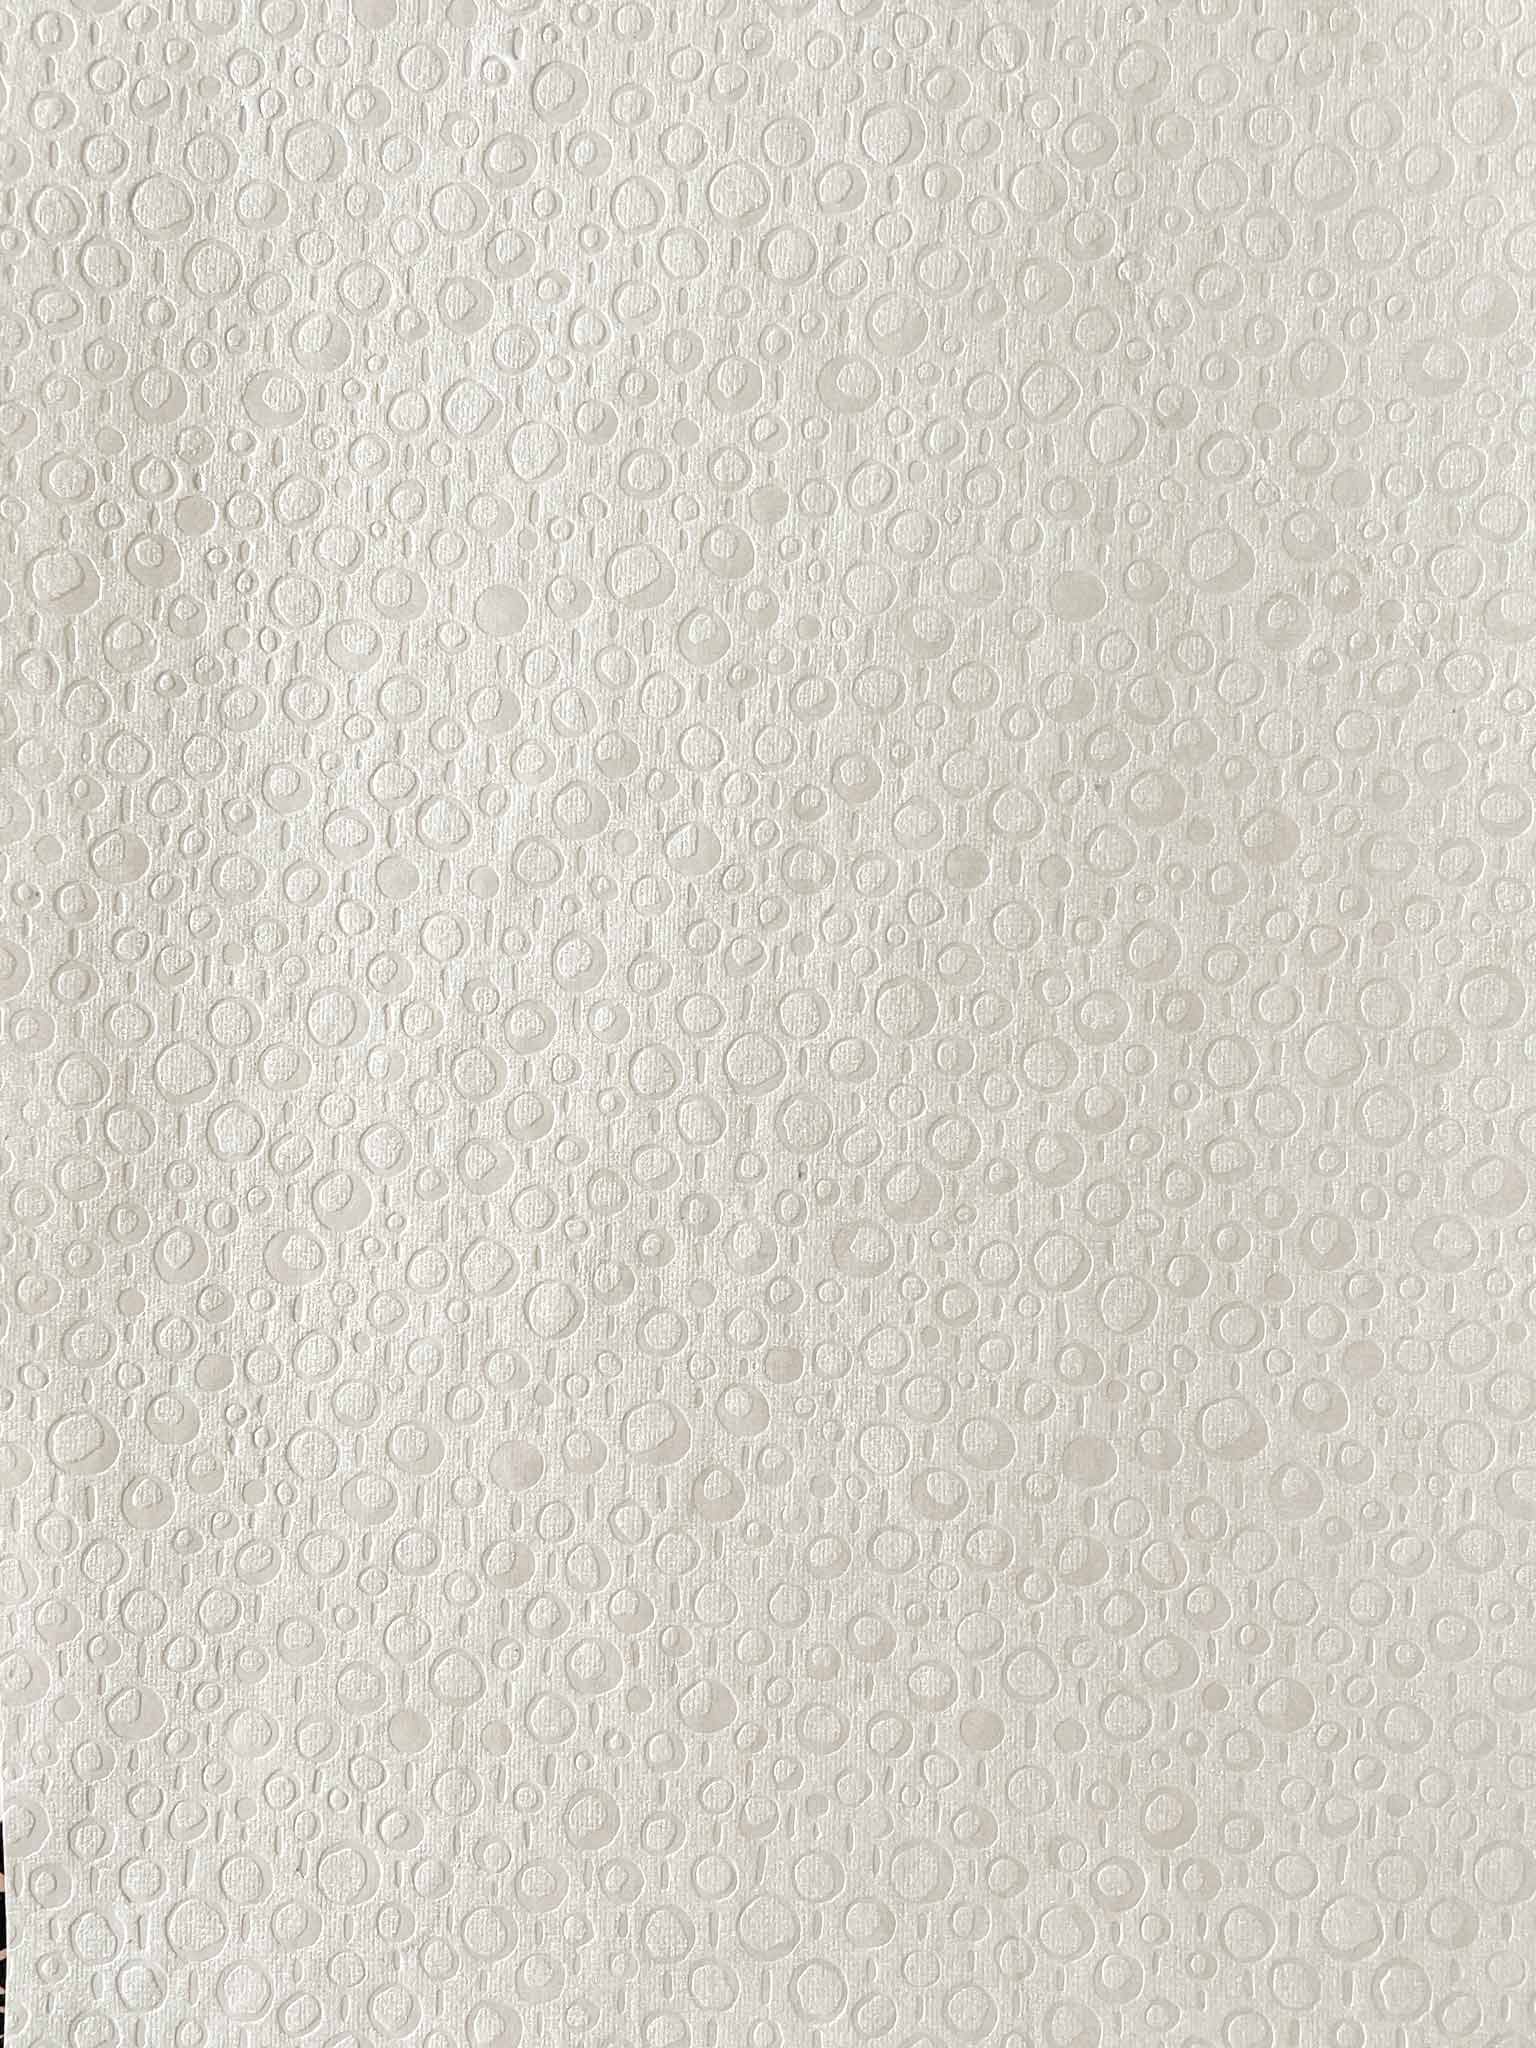 Neige Embossed Paper White  ImagineDIY   